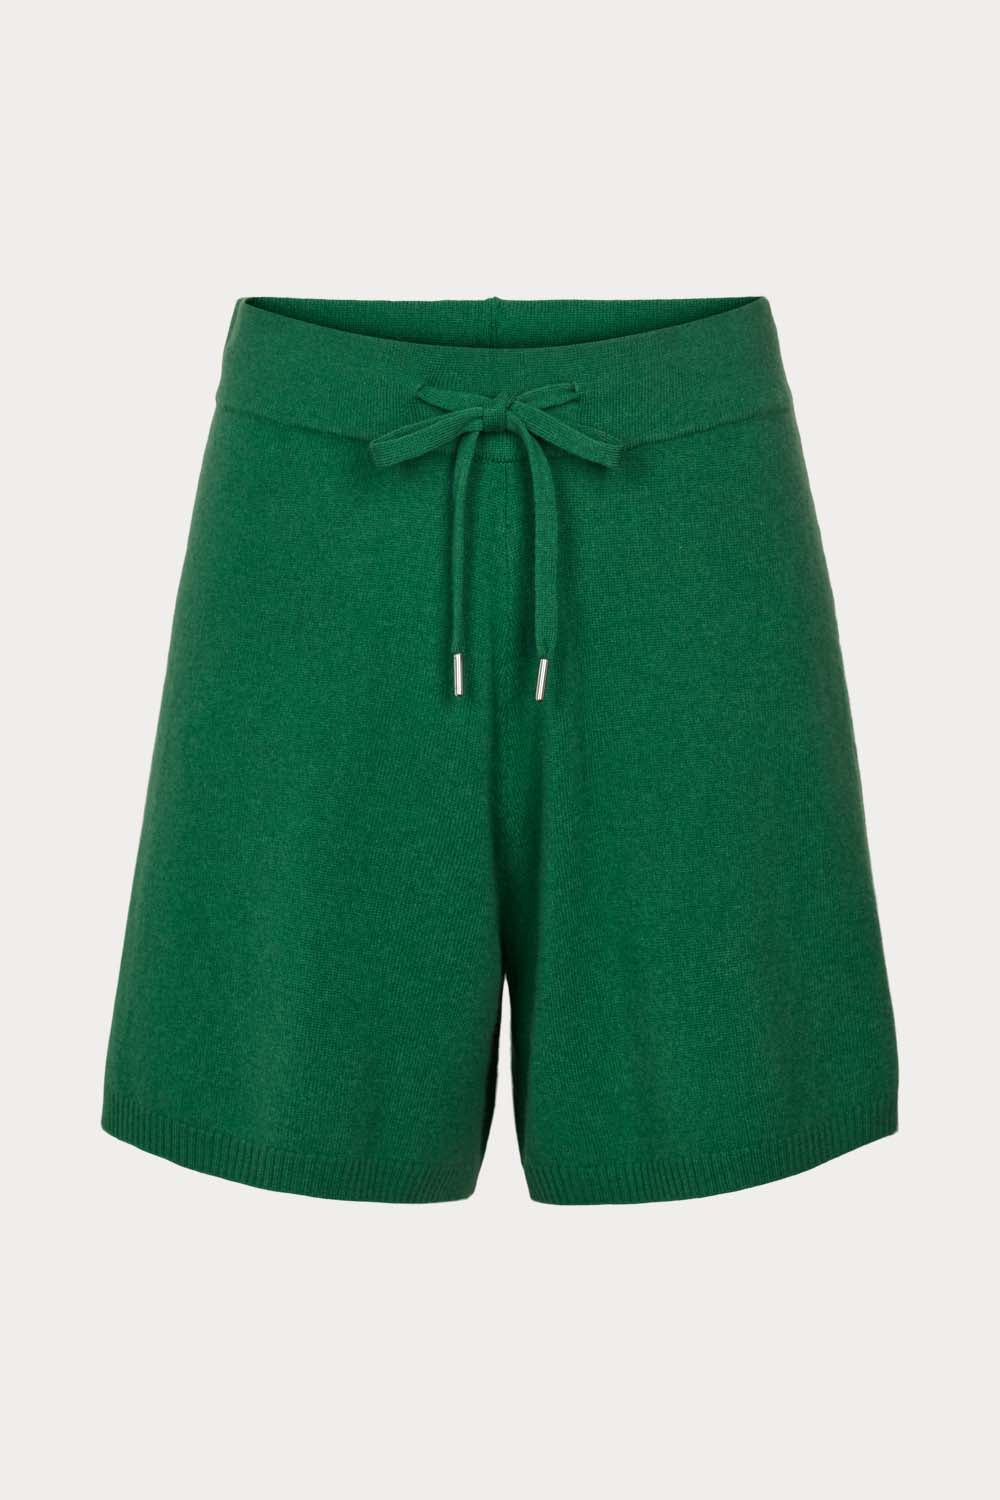 O'TAY Renee Shorts Shorts Green